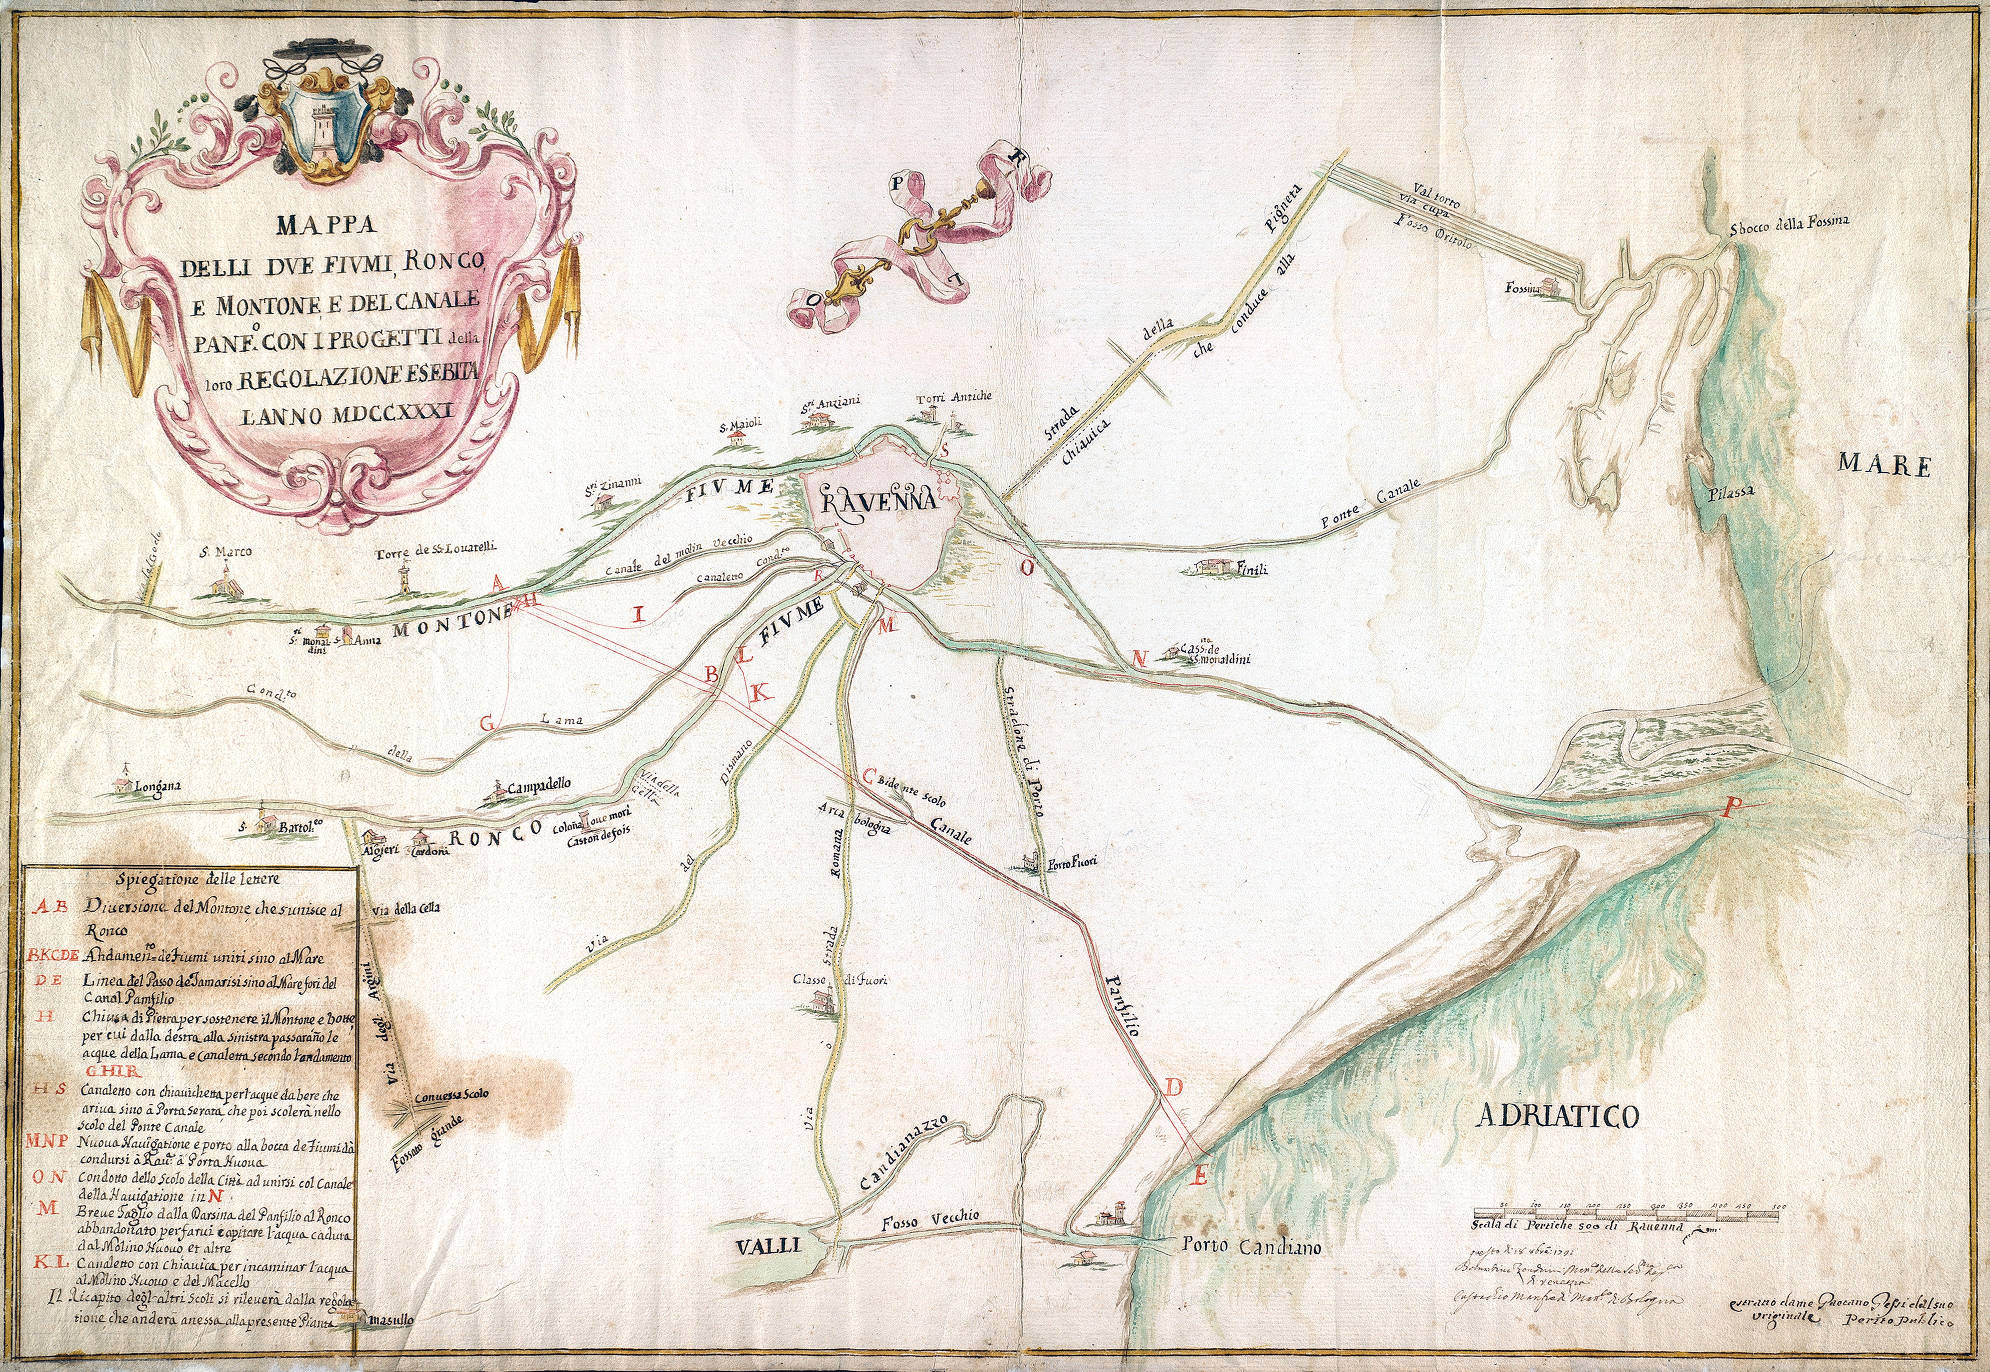 Mappa delli due fiumi Ronco e Montone e del Canale Panfilio con i progetti del di loro regolamento proposto l'anno 1731
autori: Bernardino Zendrini e Eustachio Manfredi
autore secondario: Tommaso Zelingher
data: 1731
